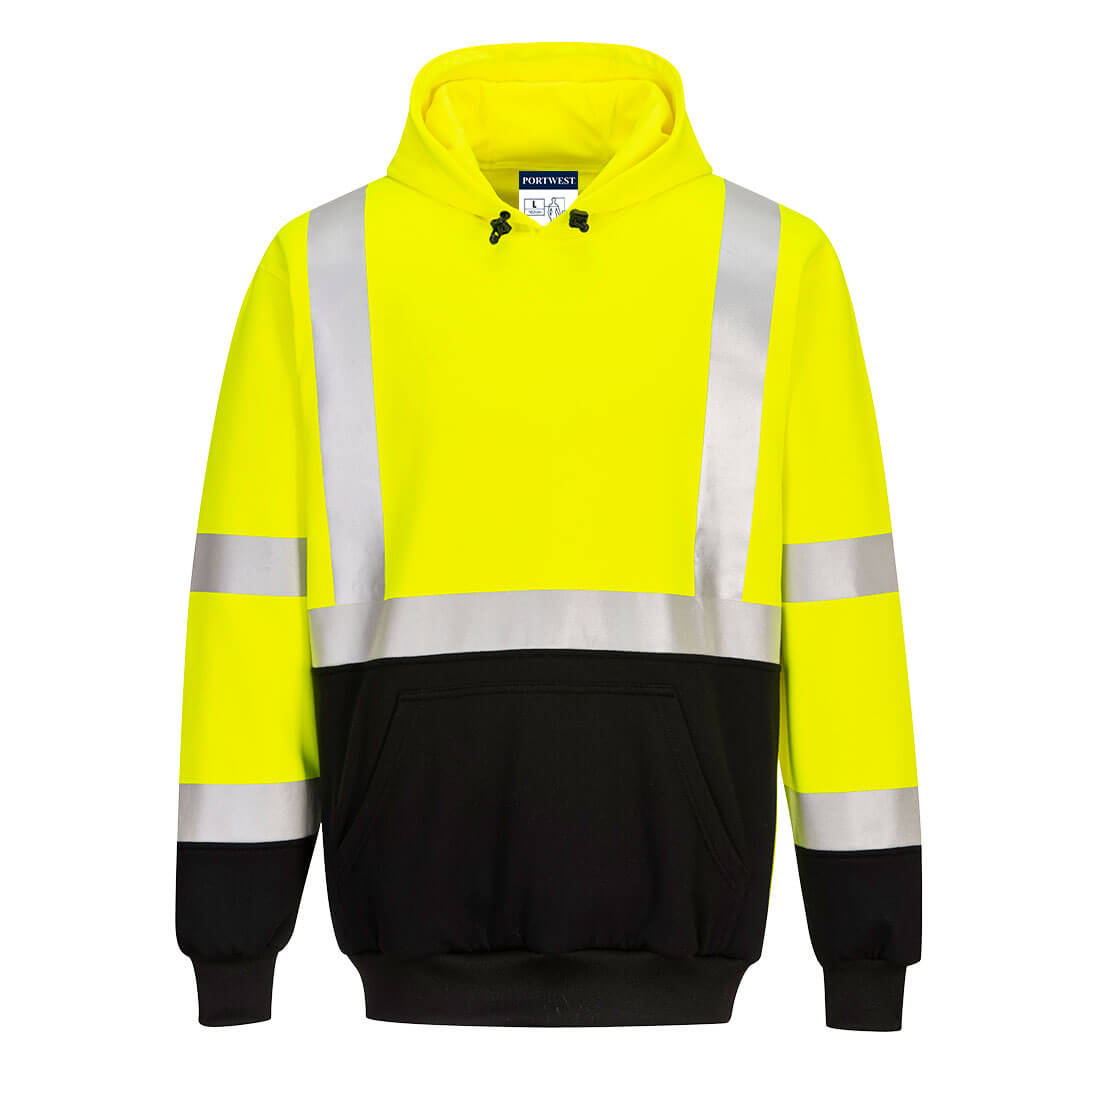 UB324 - Two-Tone Hooded Sweatshirt Yellow/Black - starequipmentsales